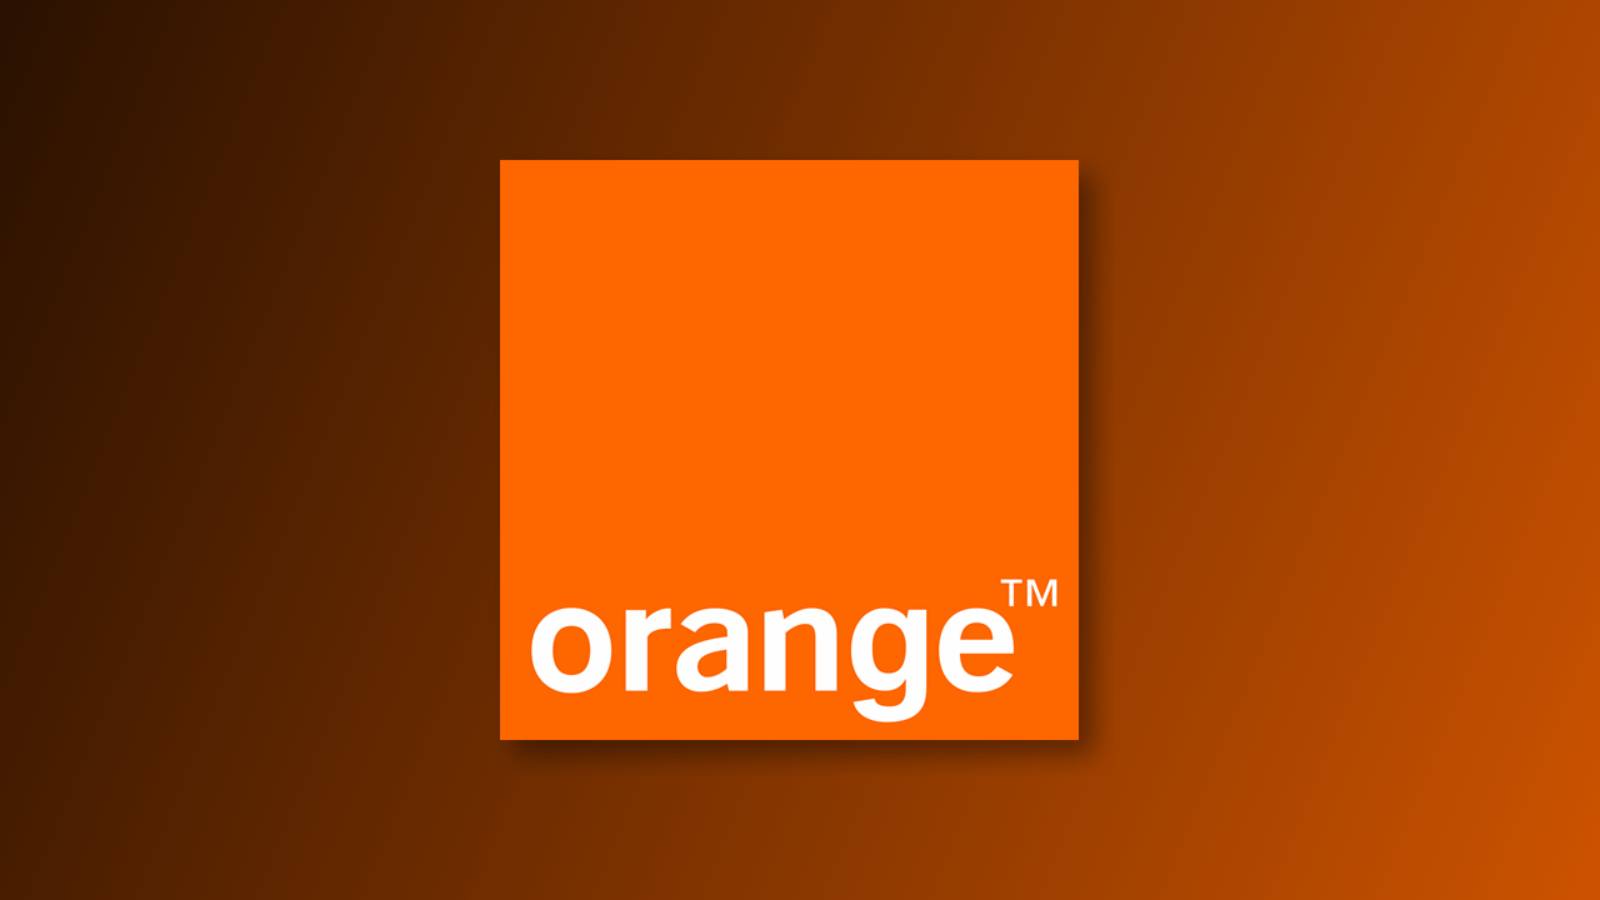 orange primire